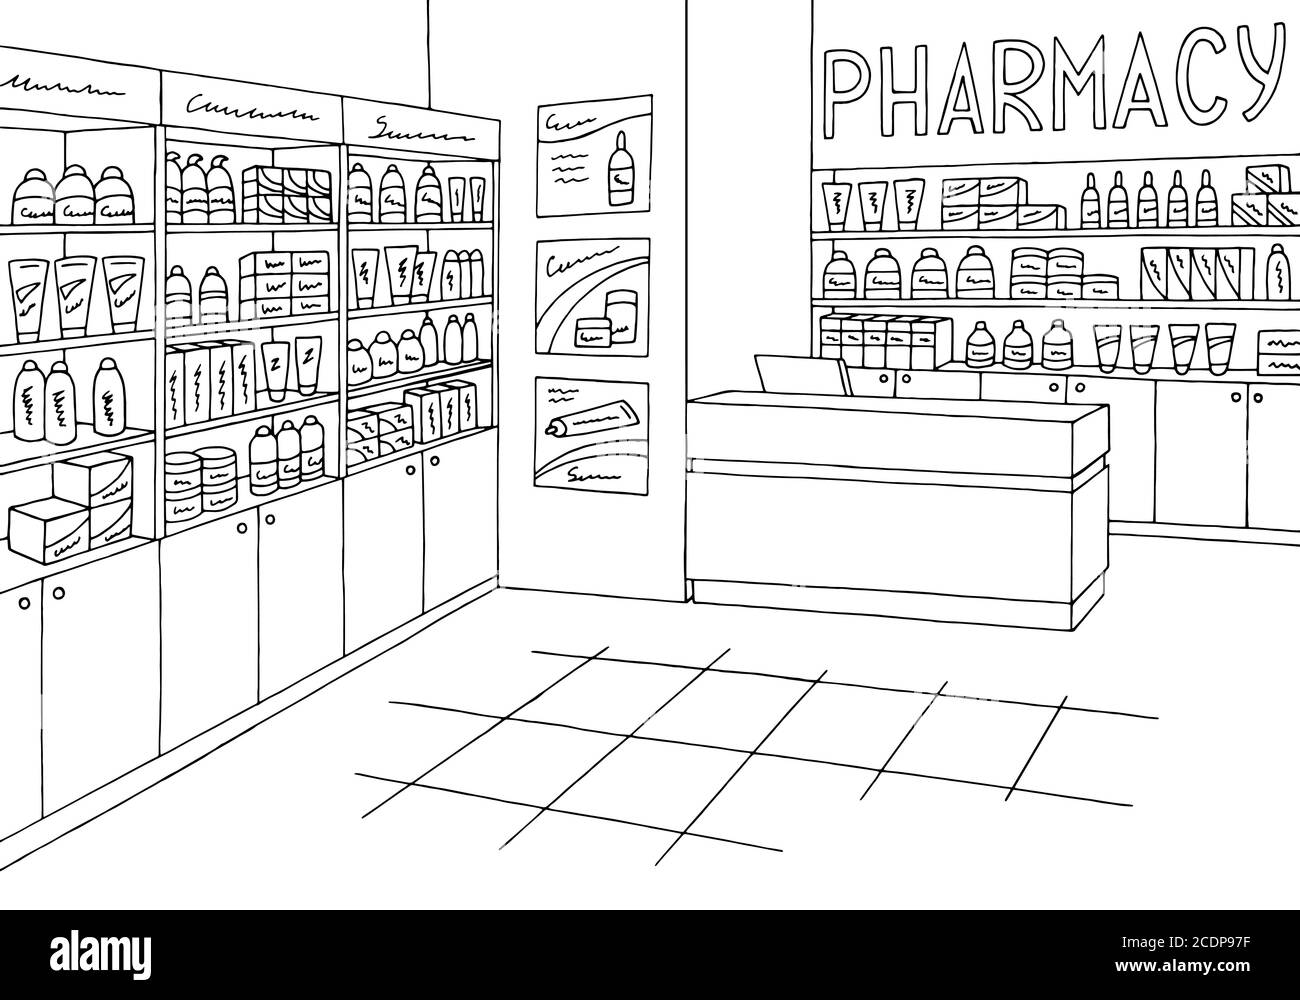 the pharmacy